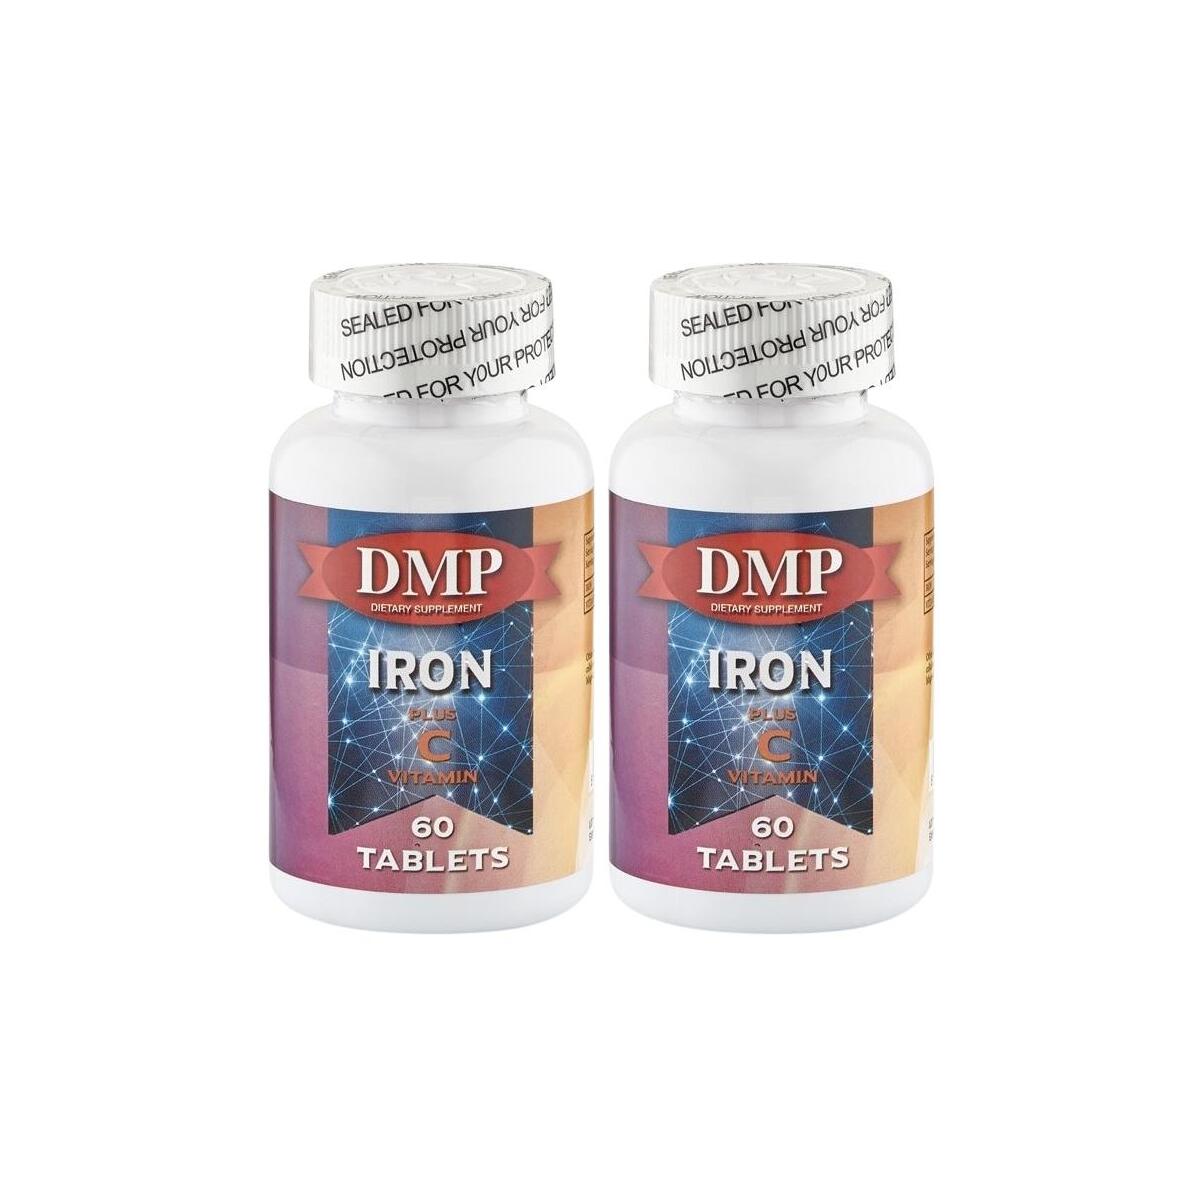 Dmp Iron Plus Vitamin C Vitamini 2X60 Tablet Demir